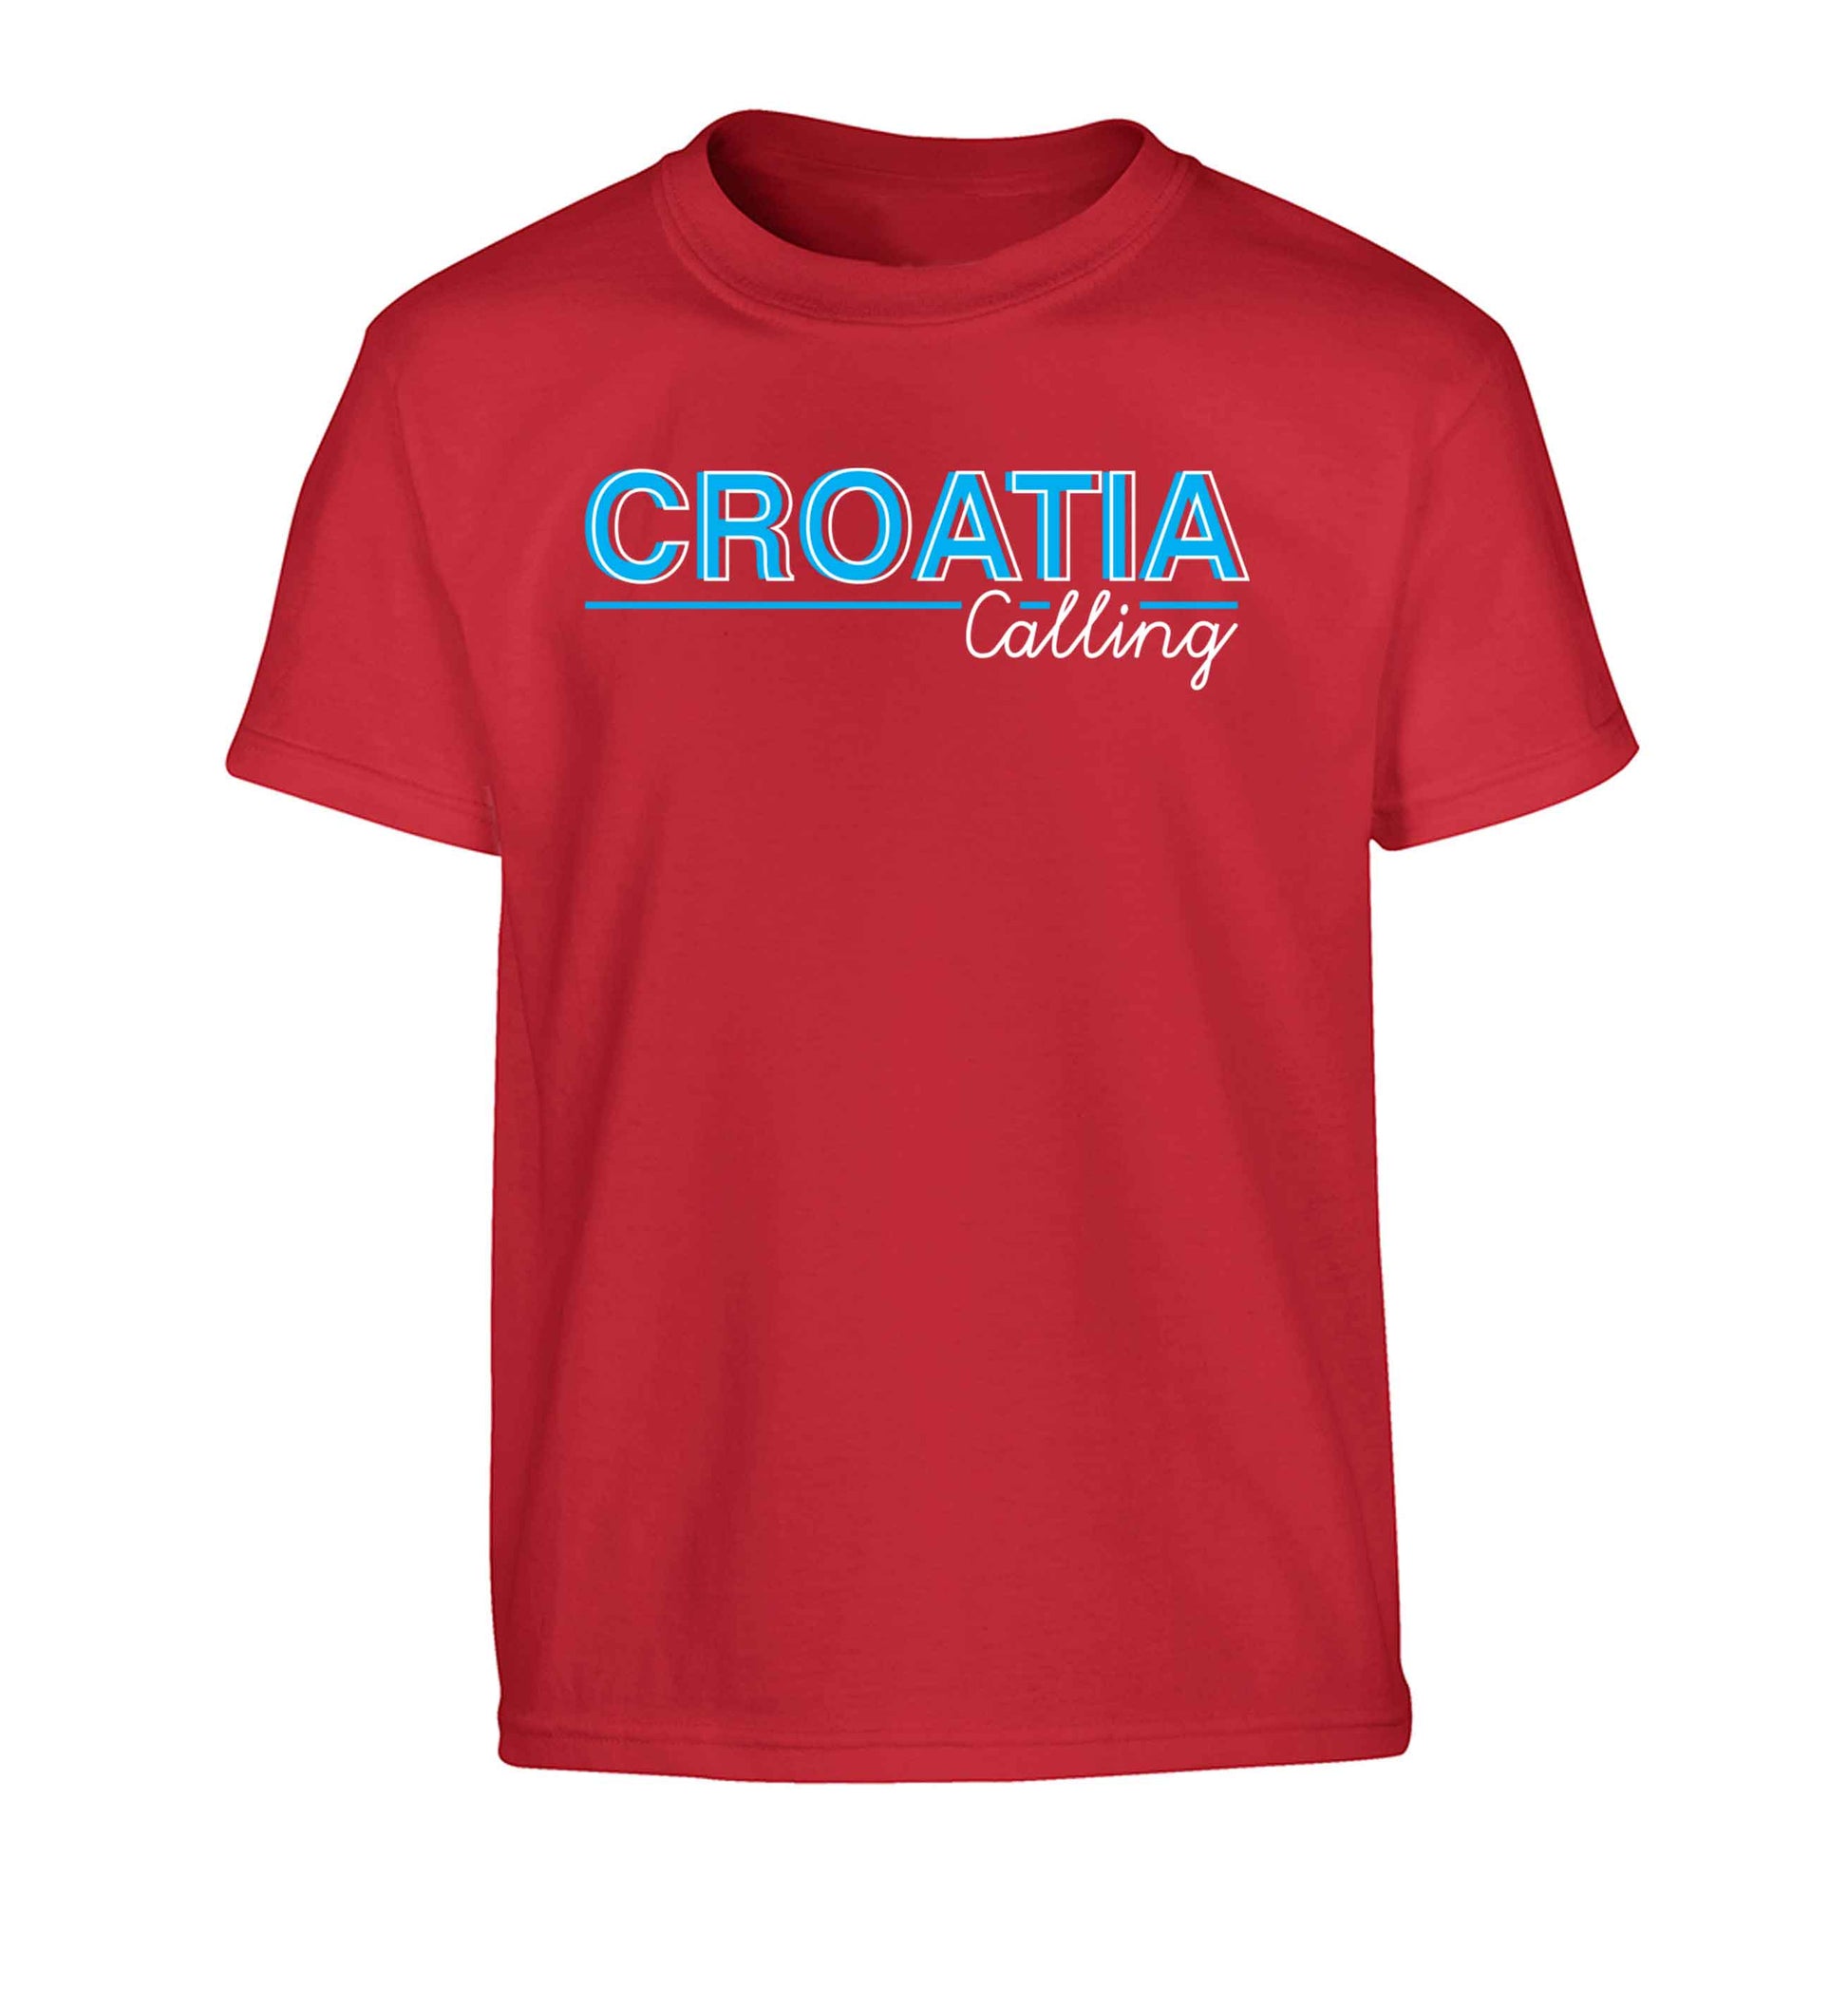 Croatia calling Children's red Tshirt 12-13 Years